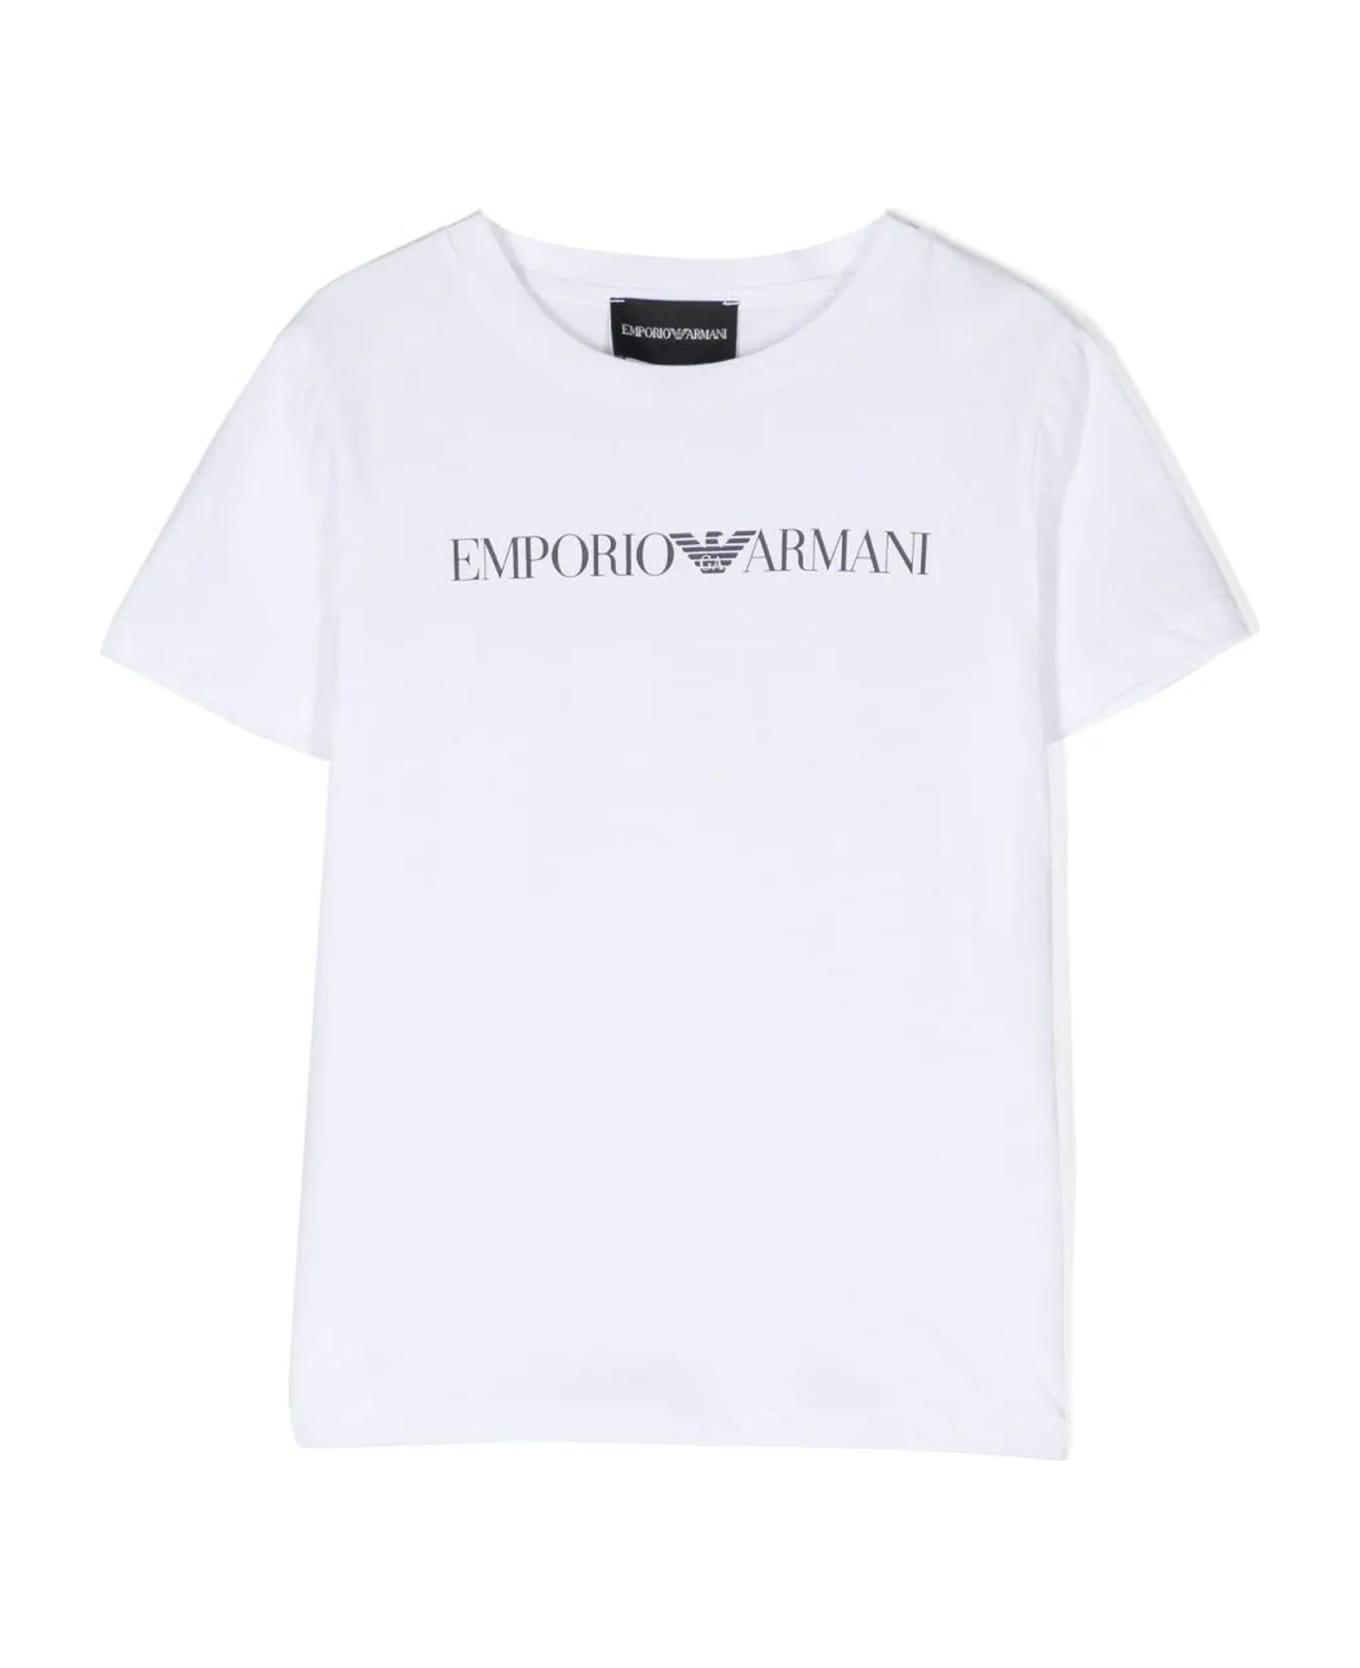 Emporio Armani T-shirts And Polos White - White